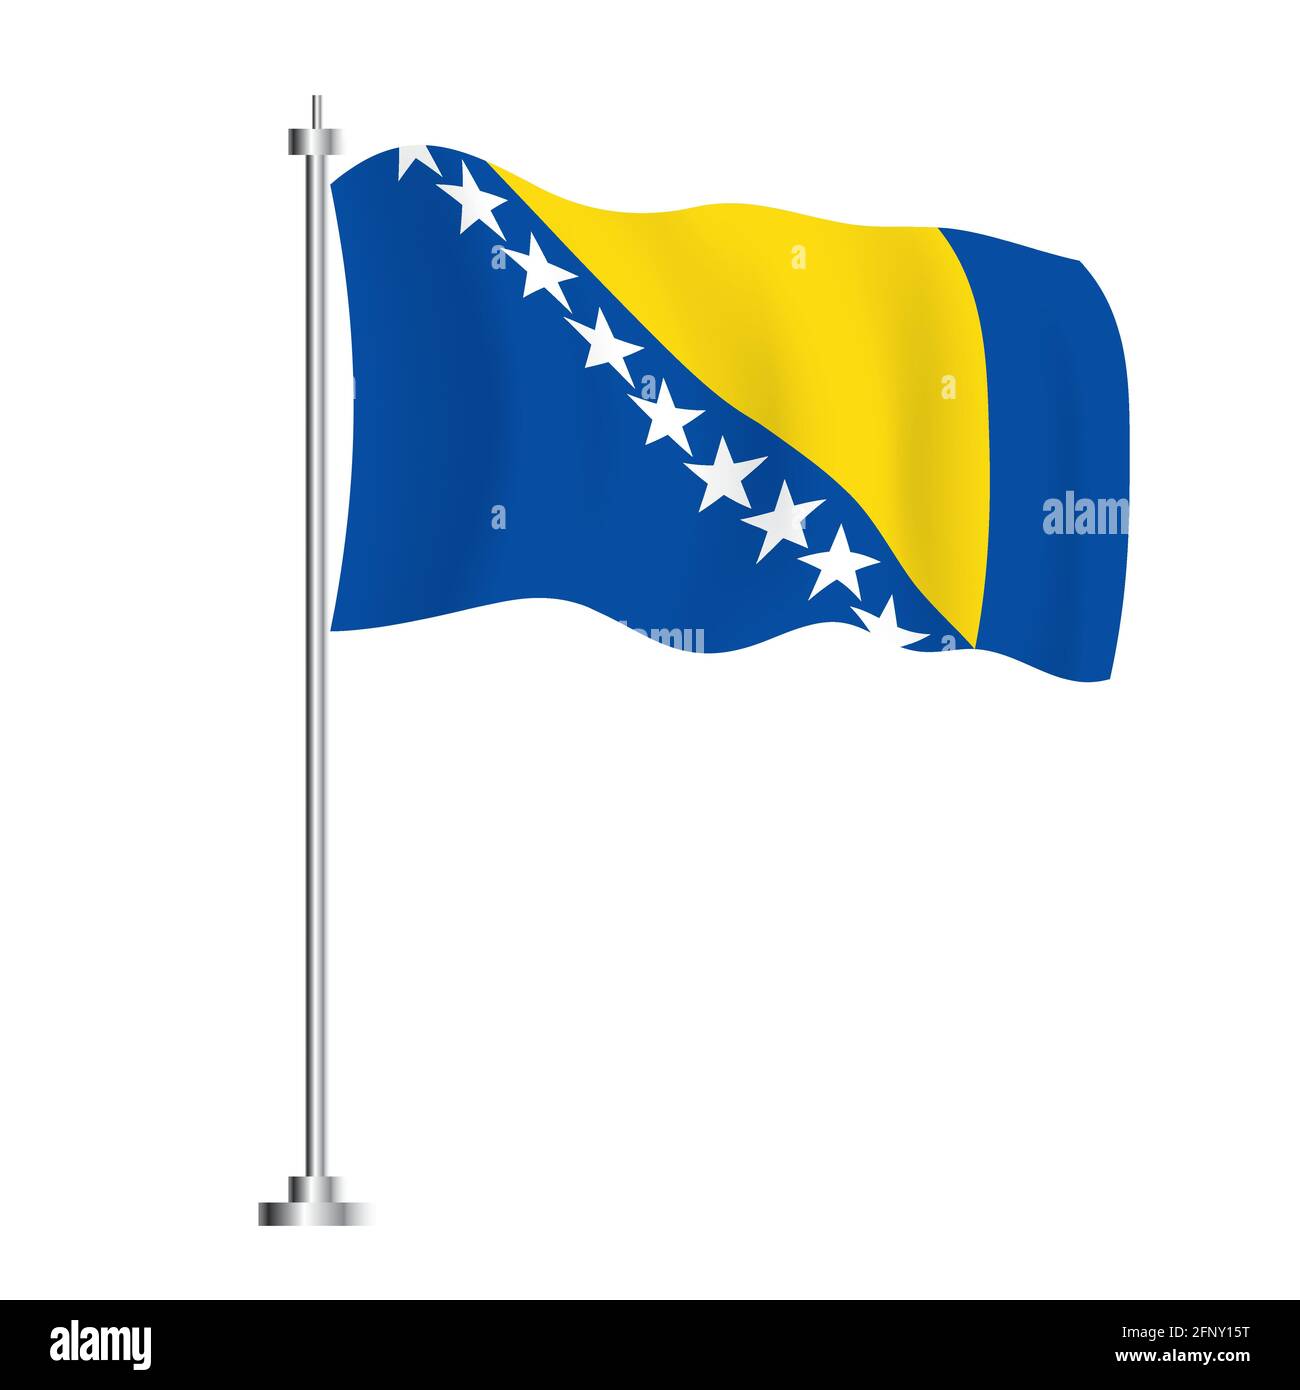 Flagge von Europa und Bosnien Herzegowina Stock Photo - Alamy